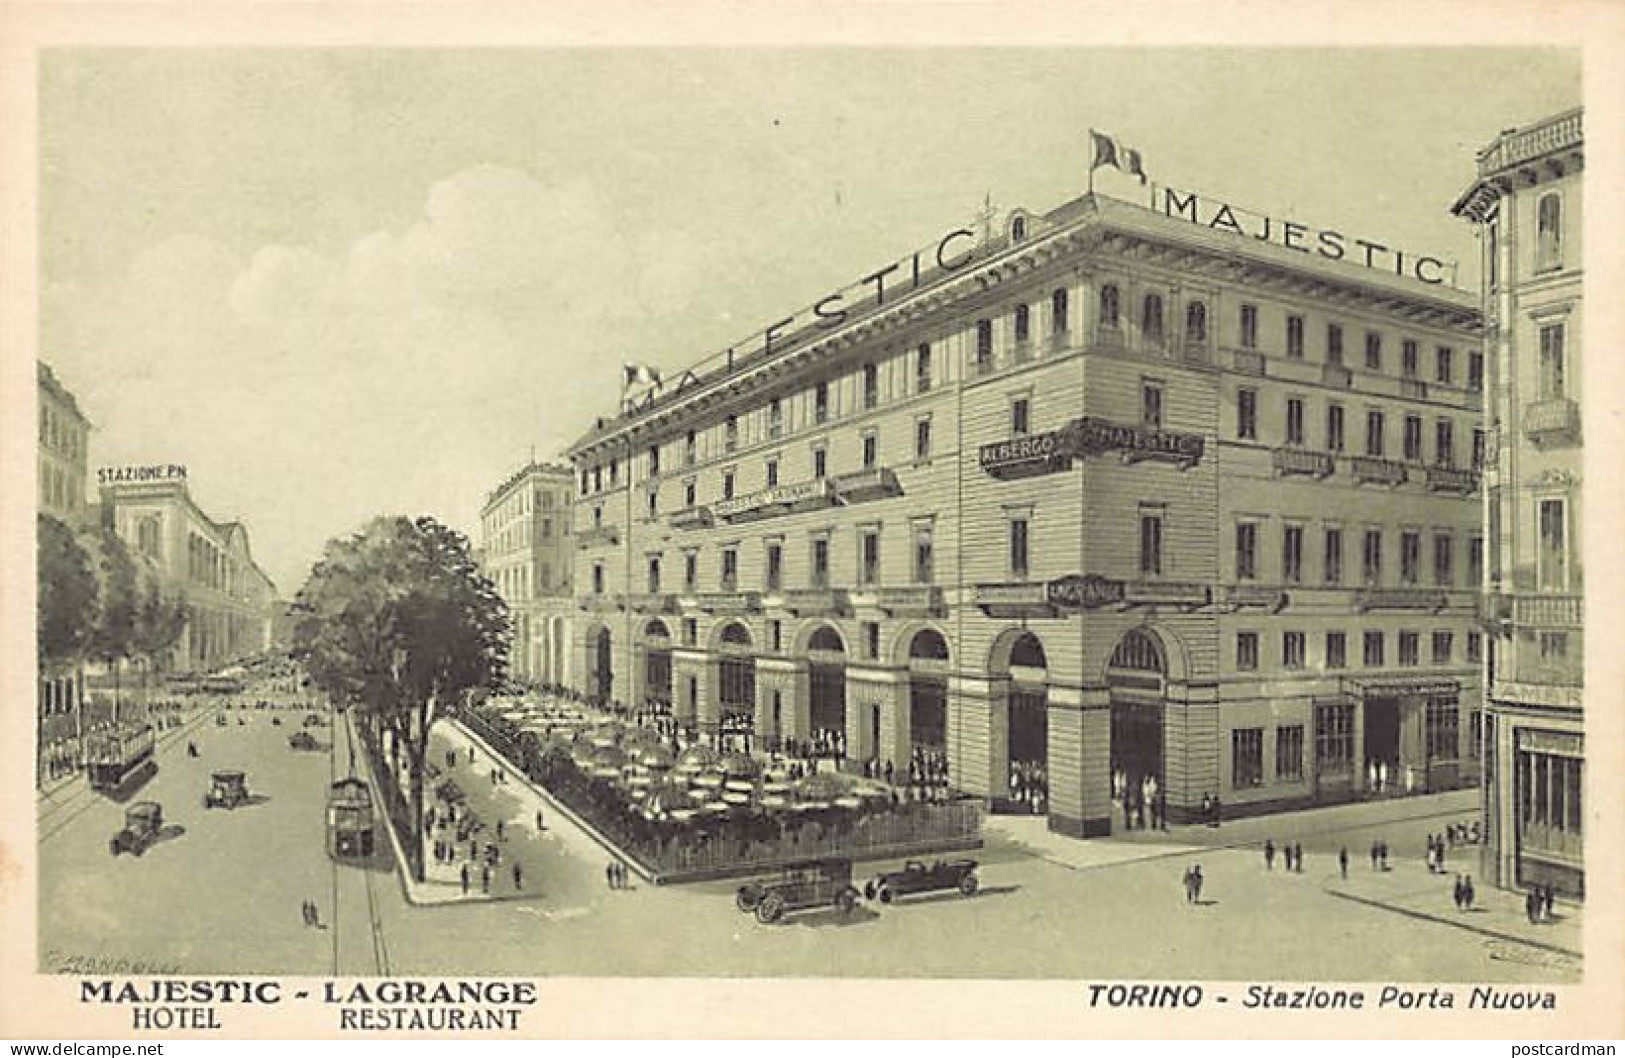  TORINO - Hotel Majestic Lagrange - Stazione Porta Nuova - Bar, Alberghi & Ristoranti